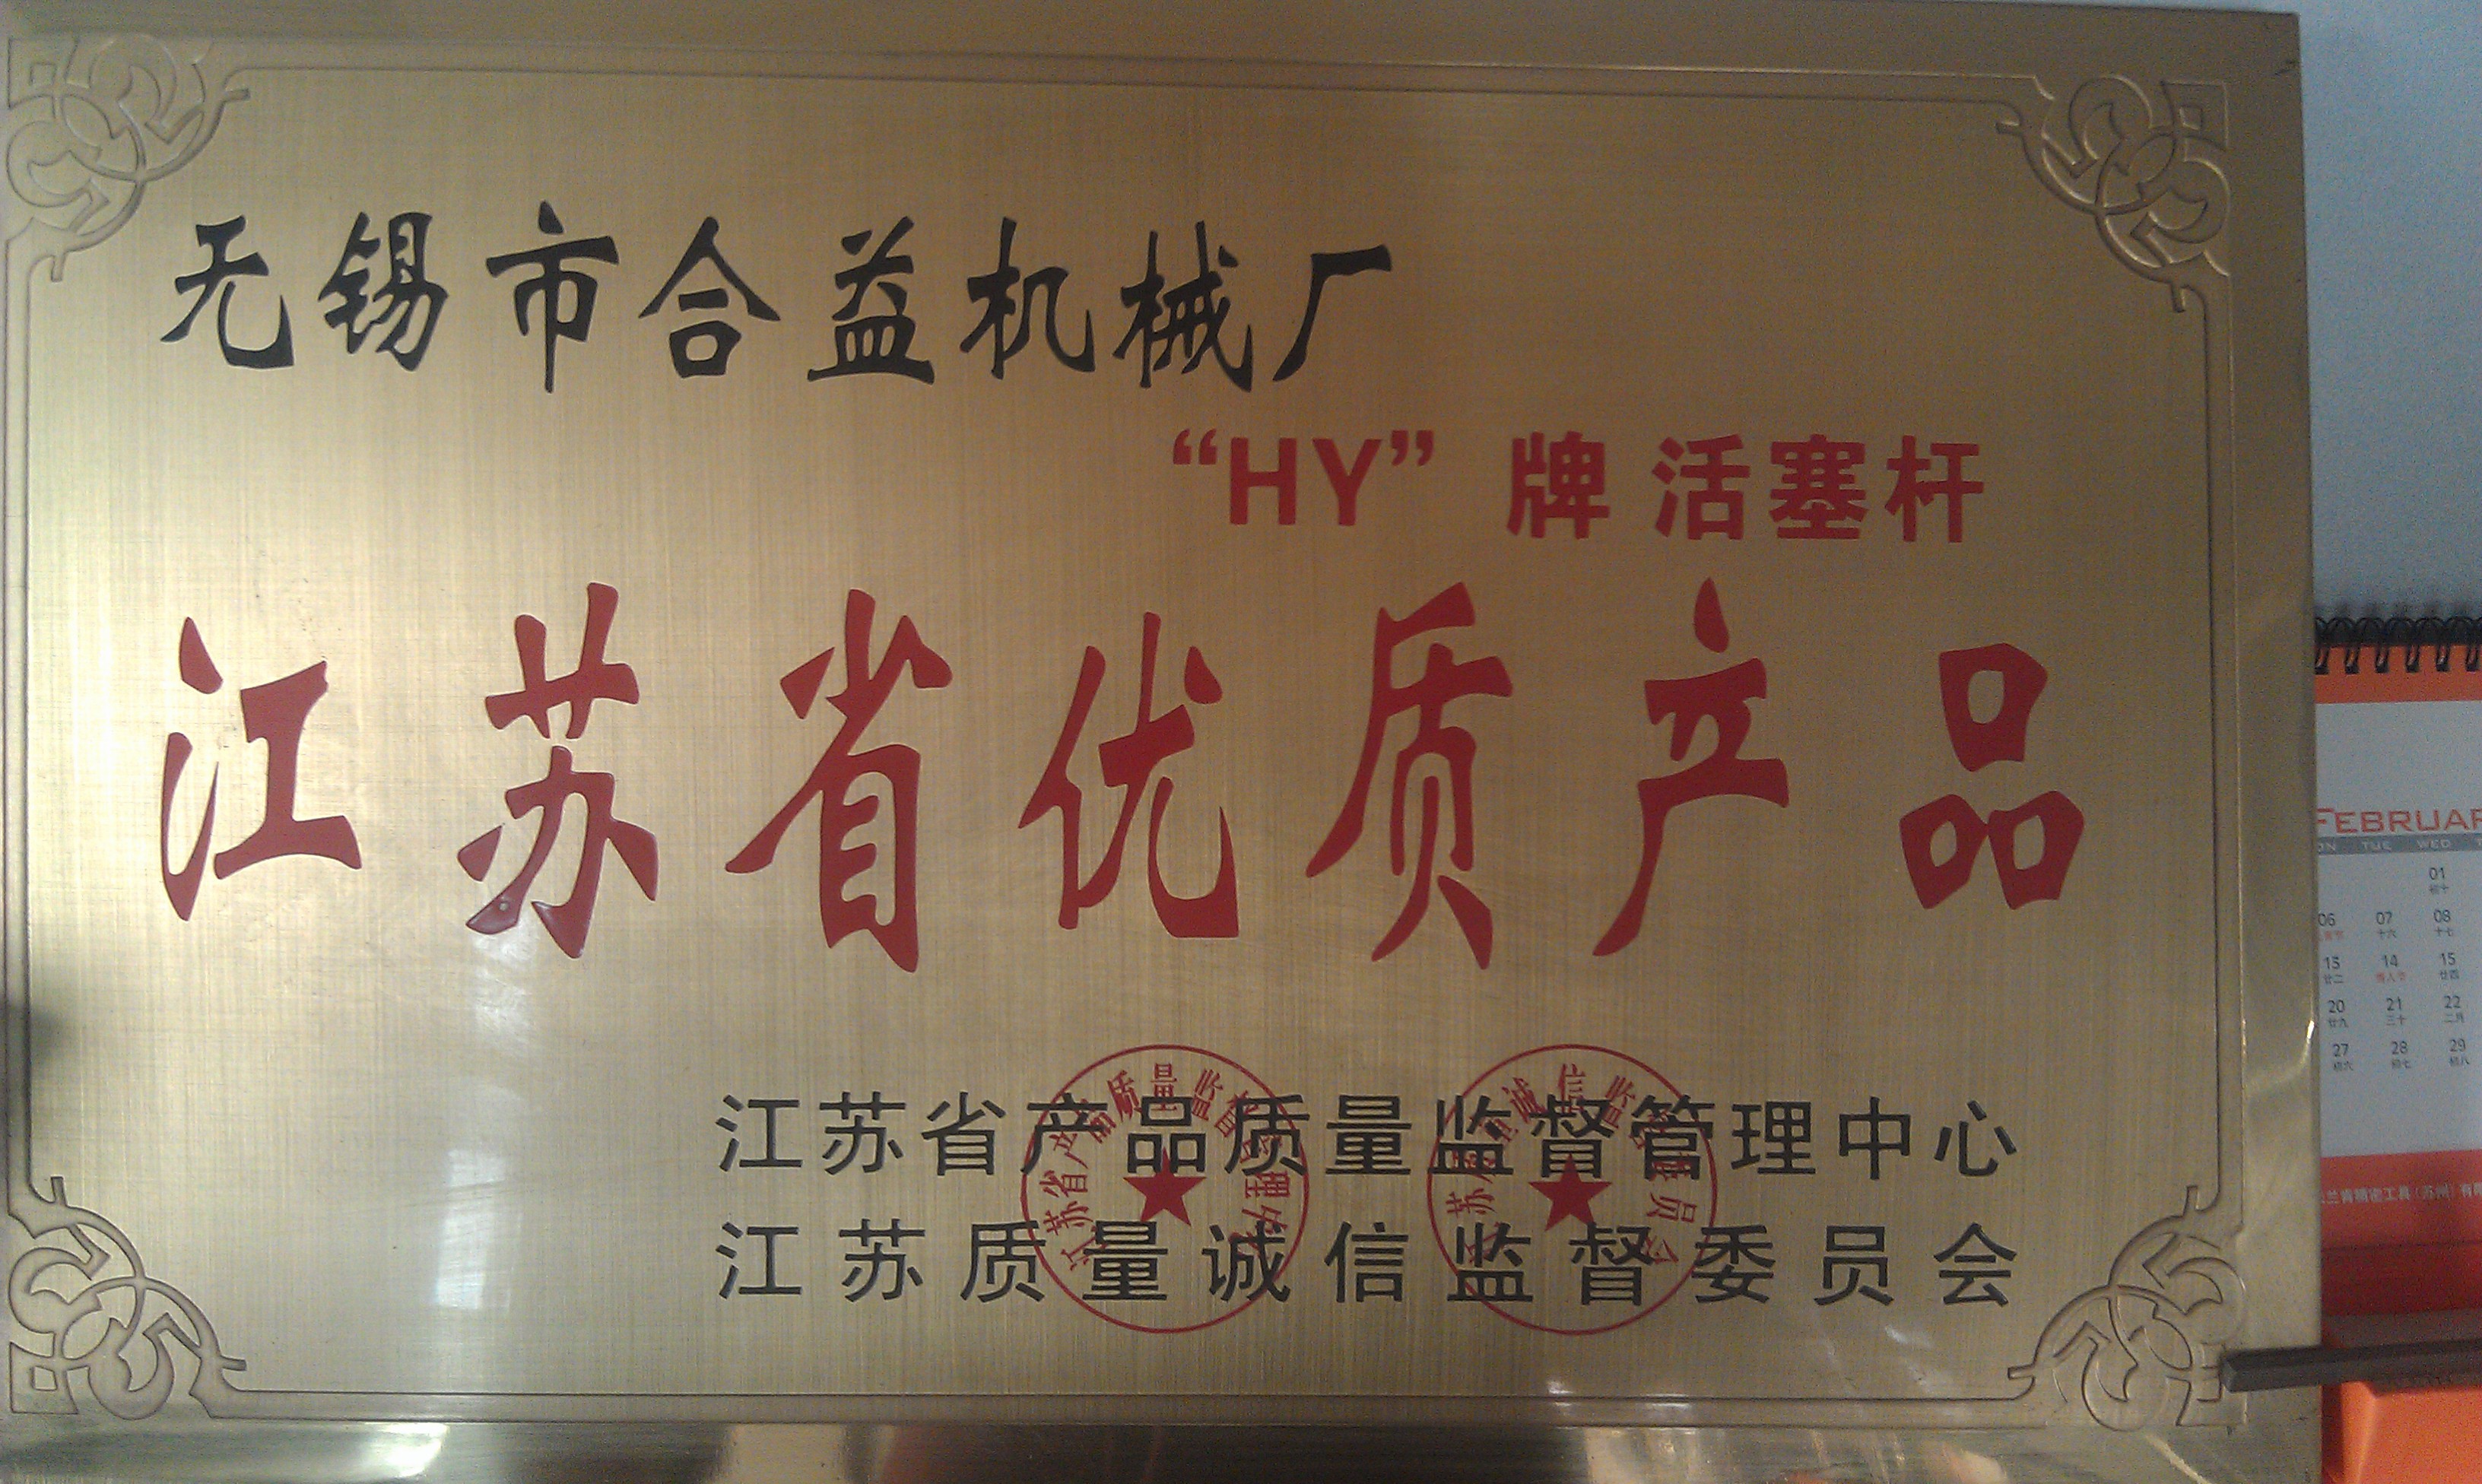 ประเทศจีน Jiangsu New Heyi Machinery Co., Ltd รับรอง